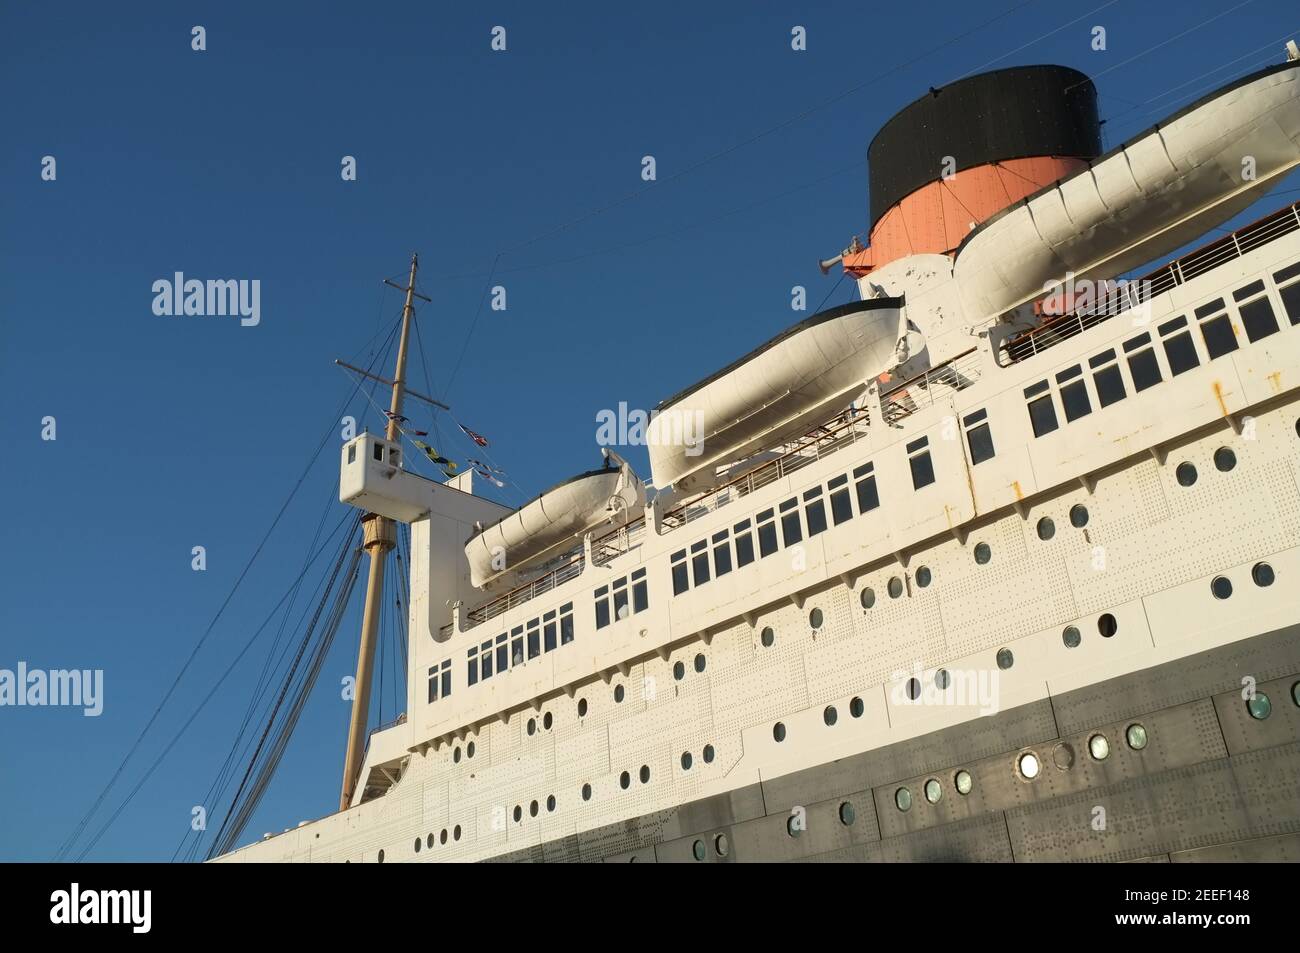 Detalle de la camisa del océano Queen Mary que muestra los botes salvavidas Foto de stock